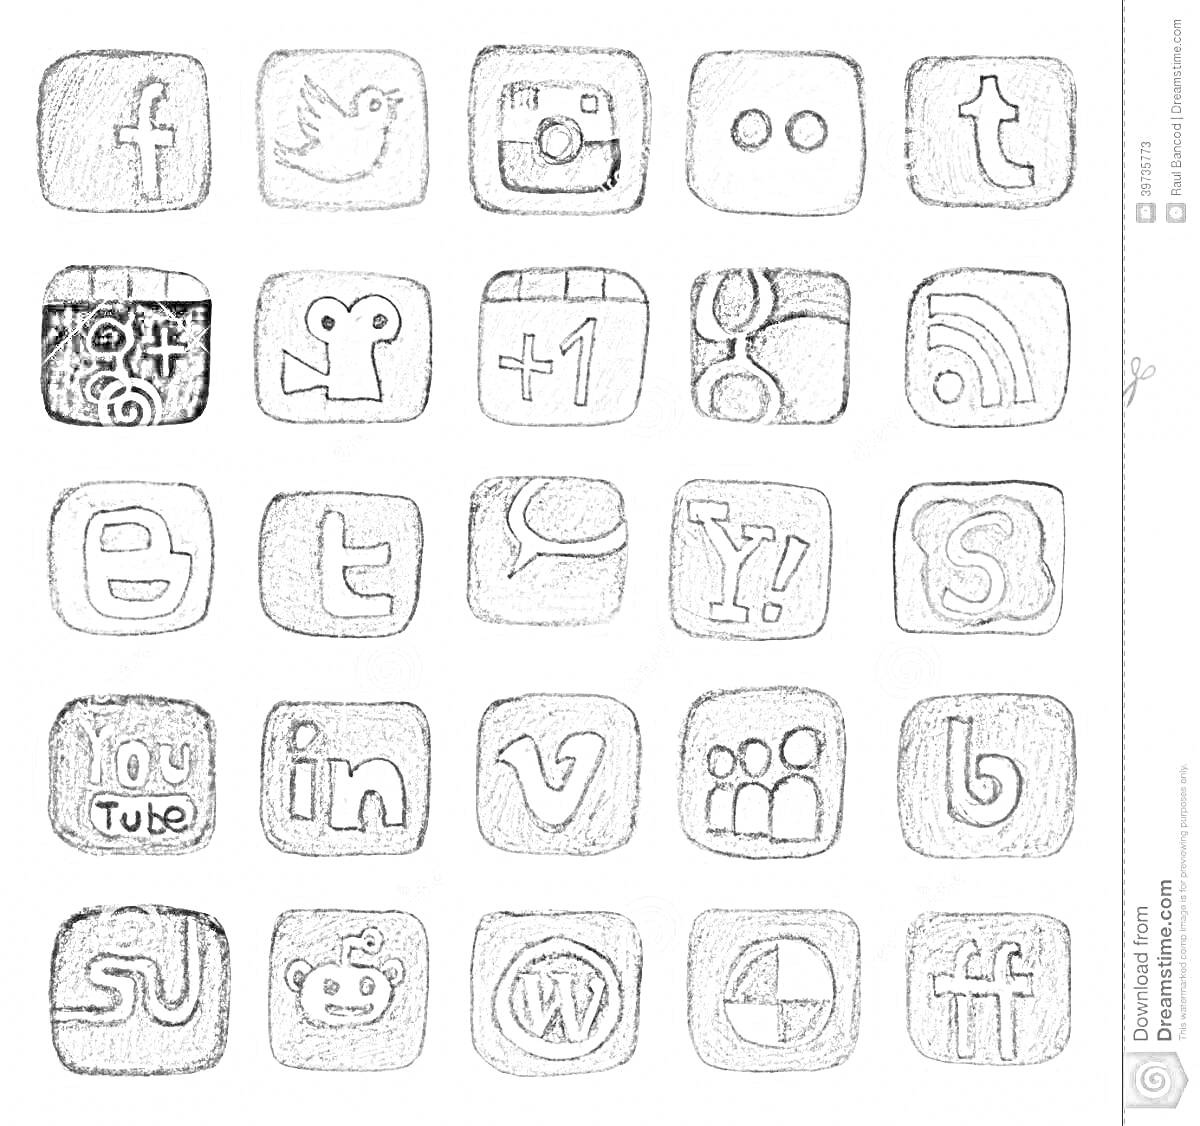 Логотипы социальных сетей и платформ в стиле карандашного рисунка со всеми элементами на фото